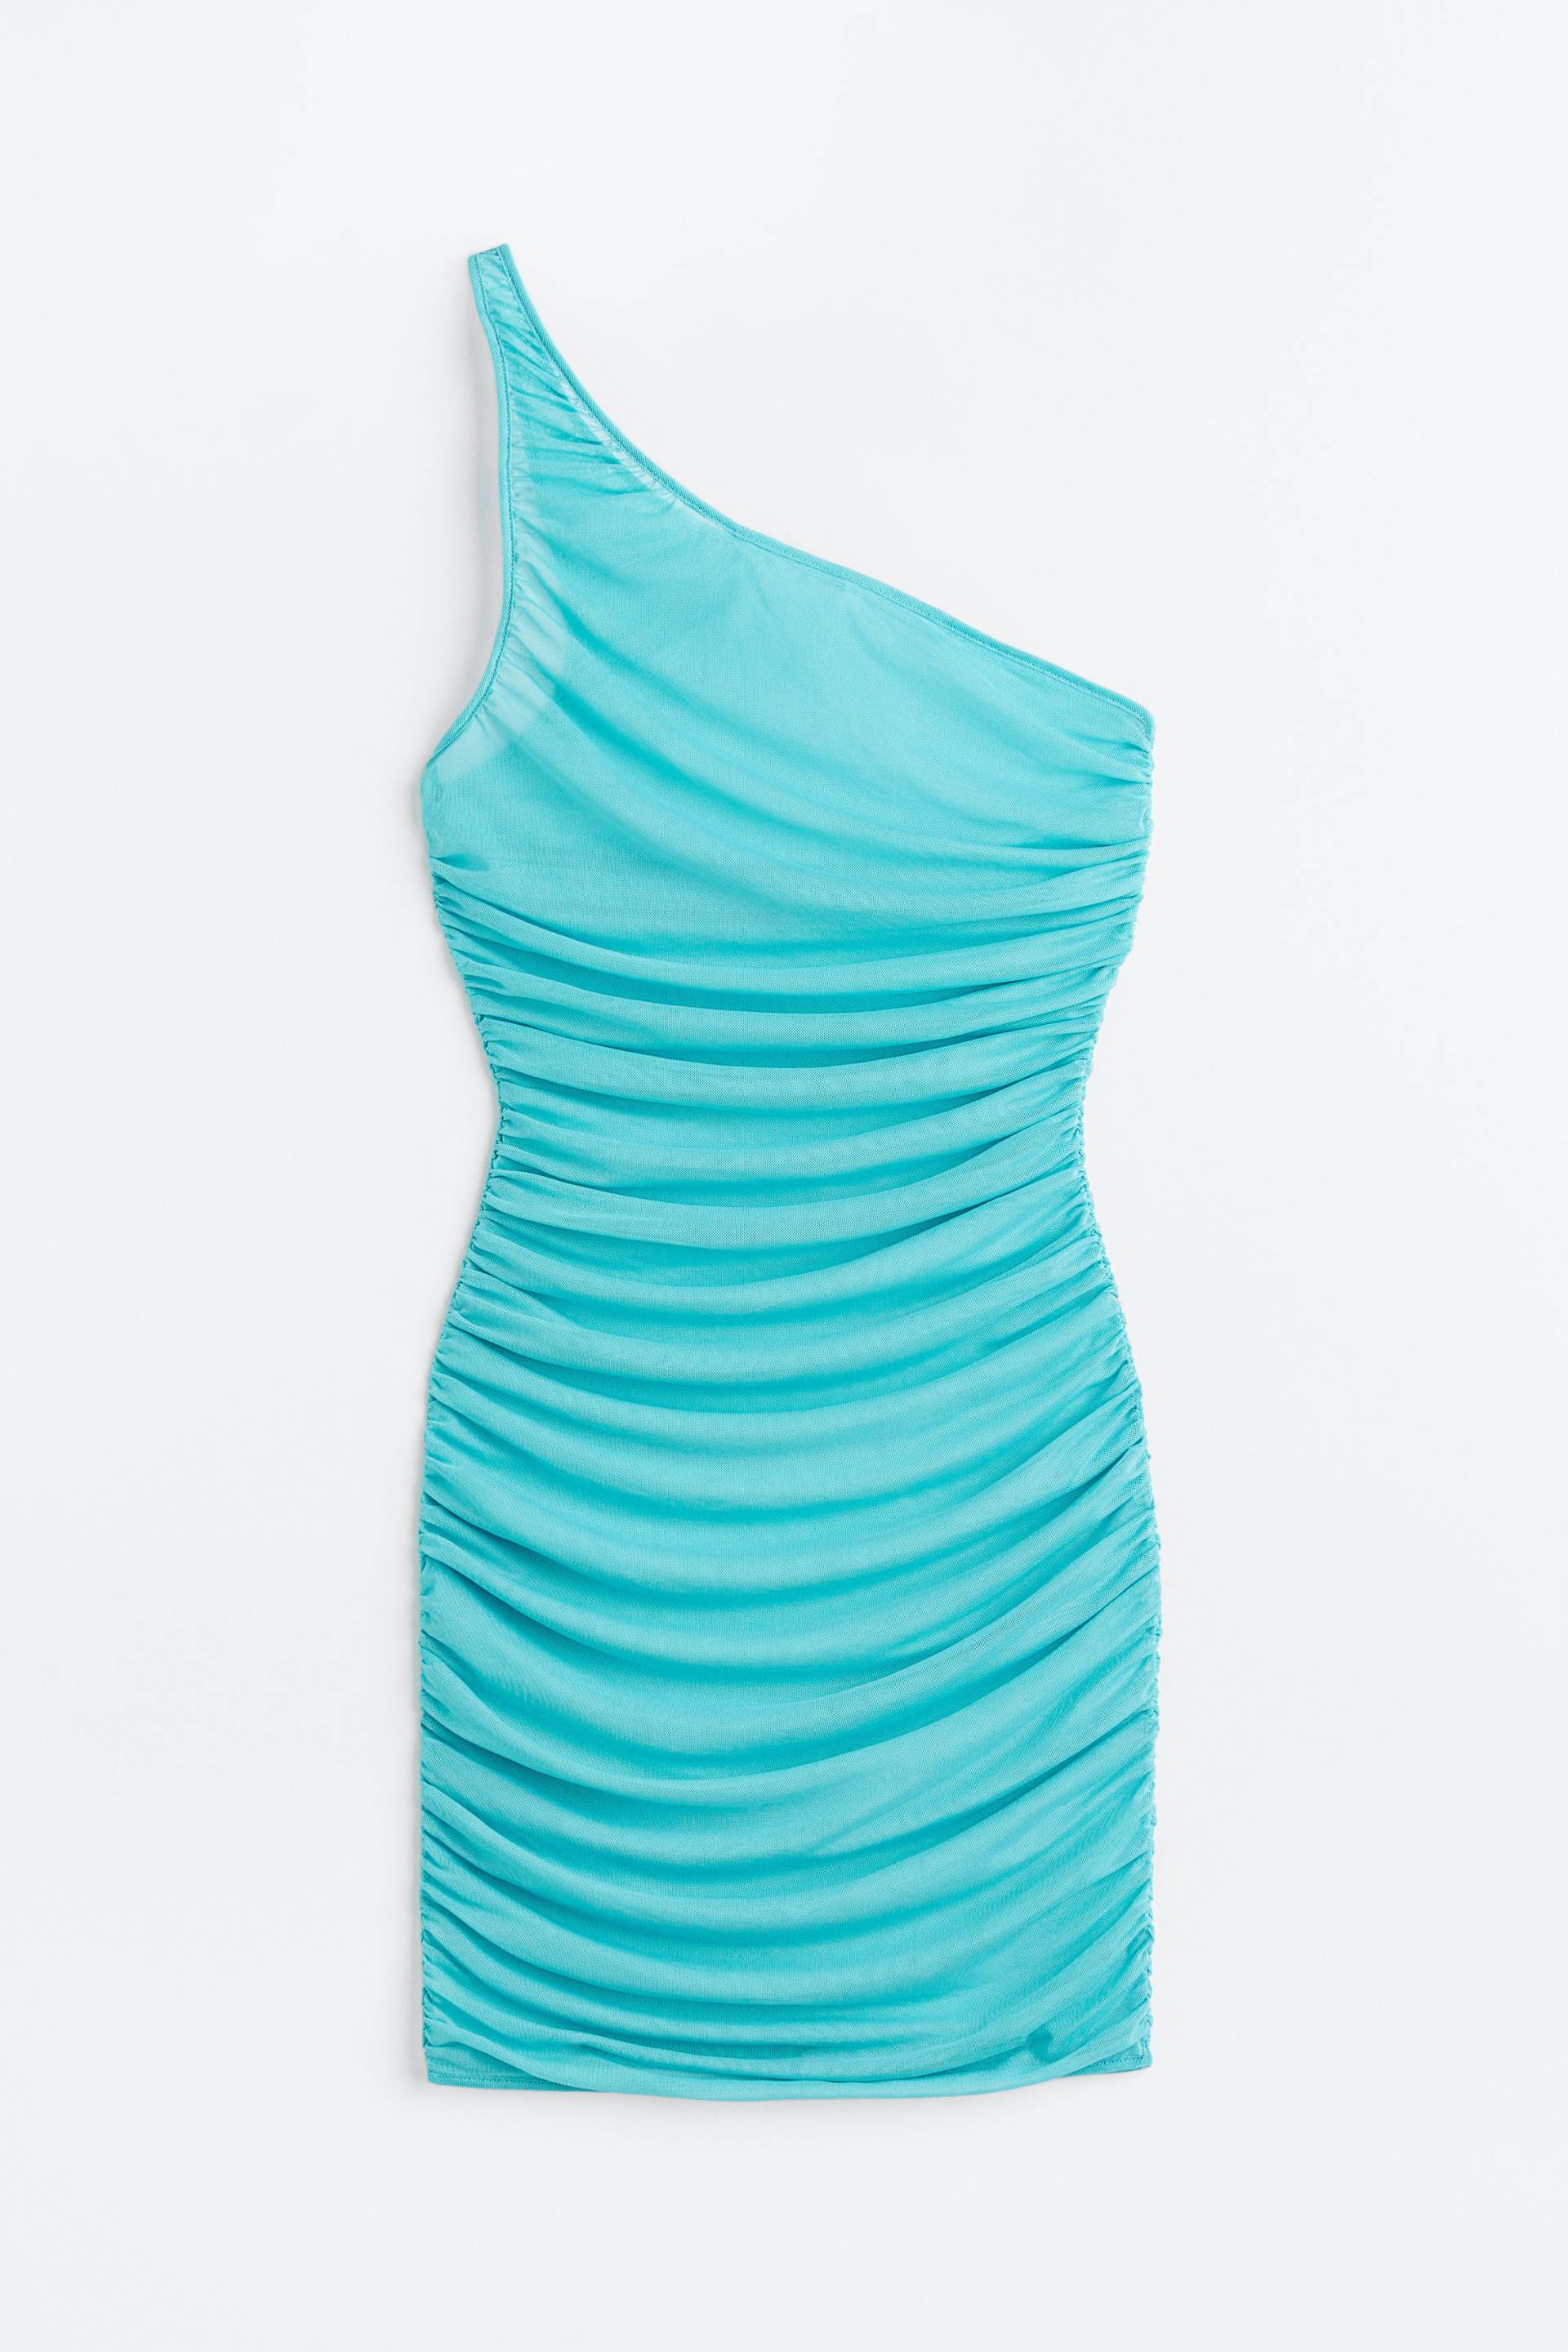 H&M One-Shoulder-Strandkleid Türkis, Strandkleidung in Größe S. Farbe: Turquoise von H&M